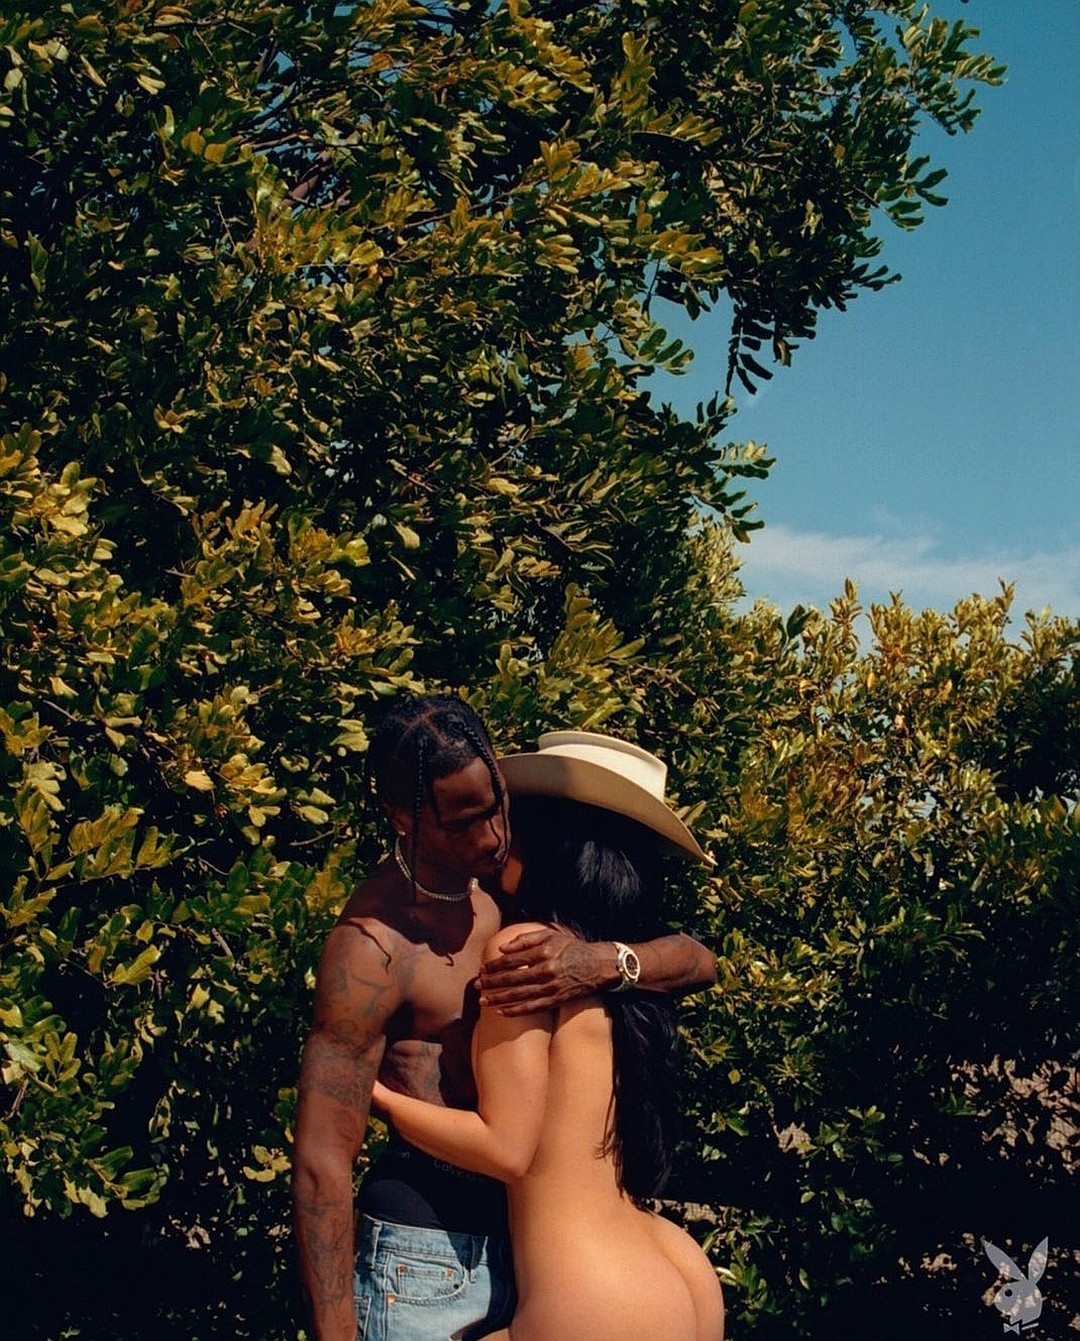 Кайли Дженнер в горячей фотосессии для Playboy.